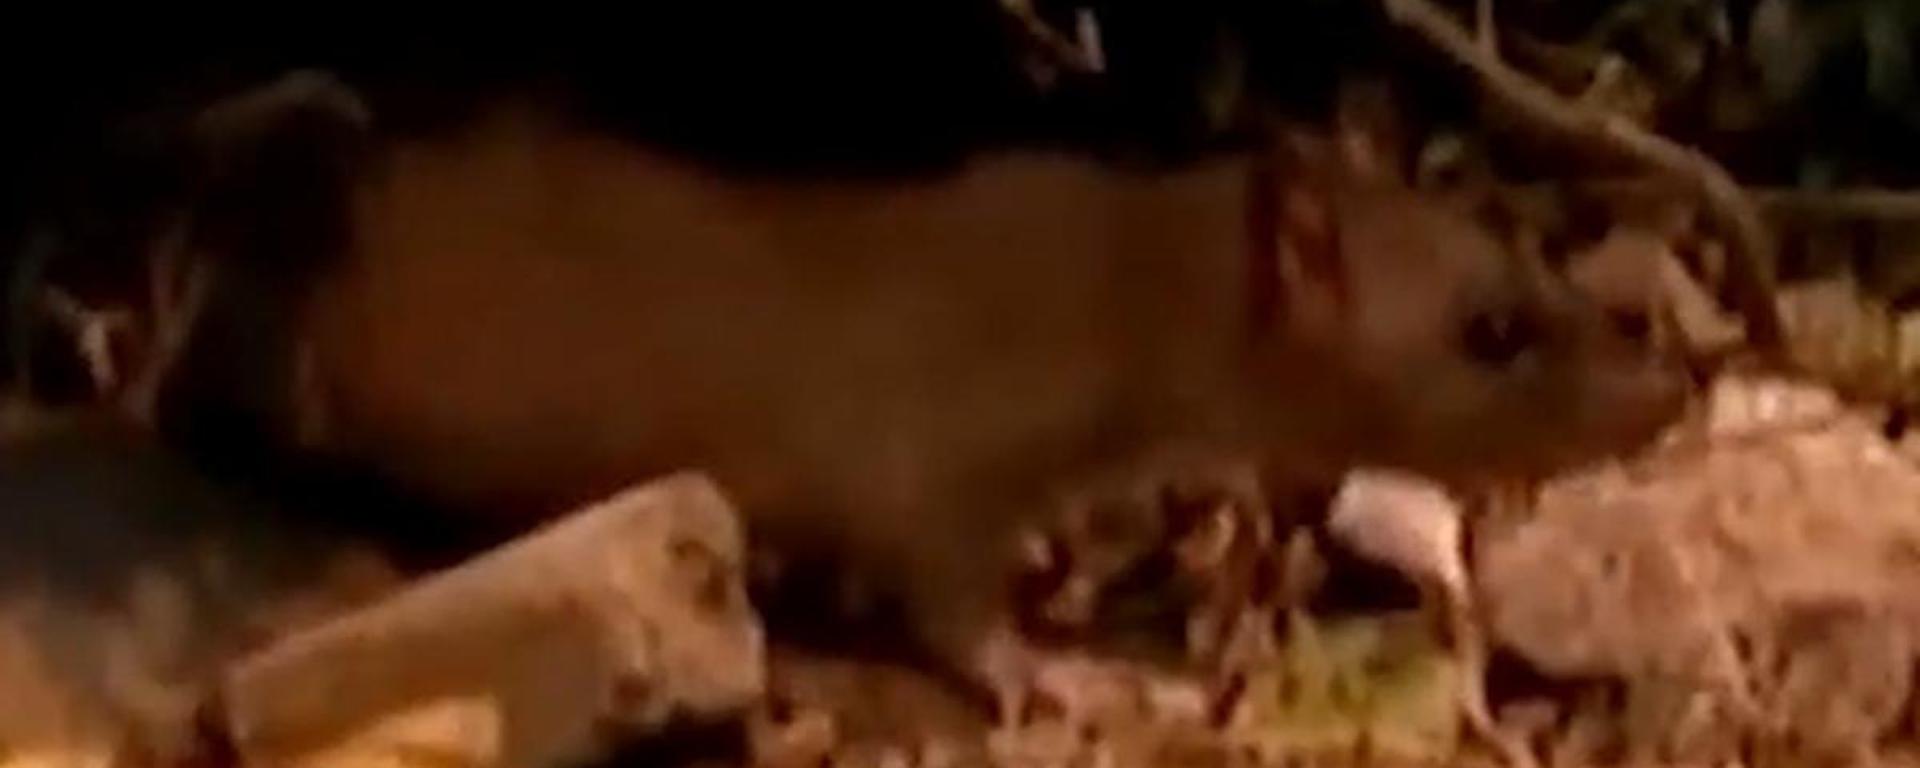 Plaga de ratas en Surco: comerciantes y vecinos denuncian que roedores invaden alrededores del Mercado Jorge Chávez